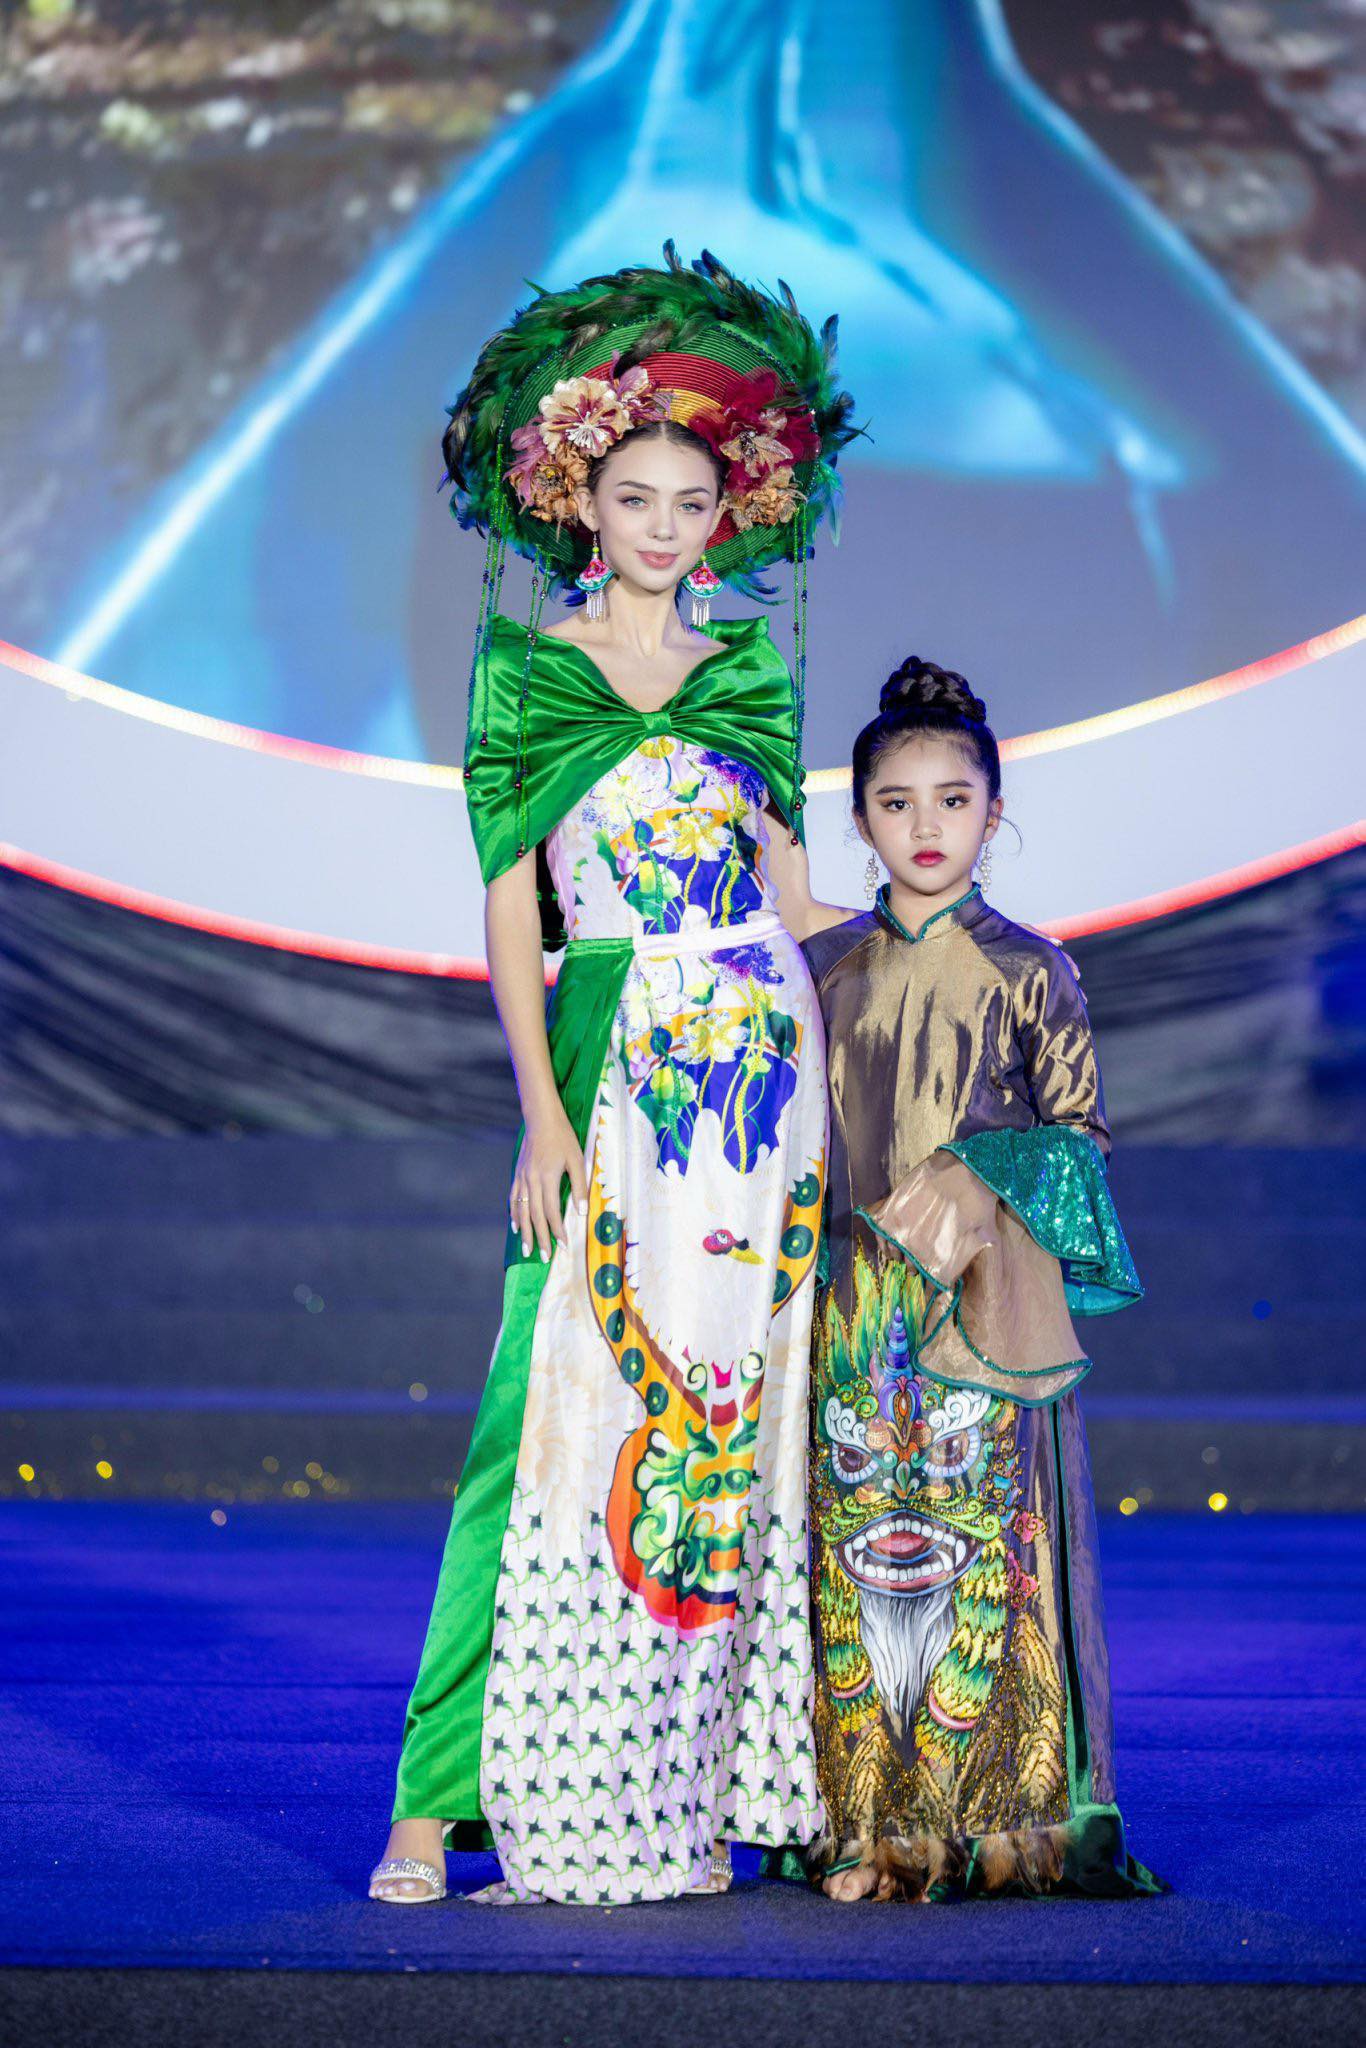 Siêu mẫu Dianka - bà xã thủ môn Bùi Tiến Dũng và Á quân Toả sáng thiên thần nhí - Nguyễn Minh Châu. Ảnh: Nhân vật cung cấp